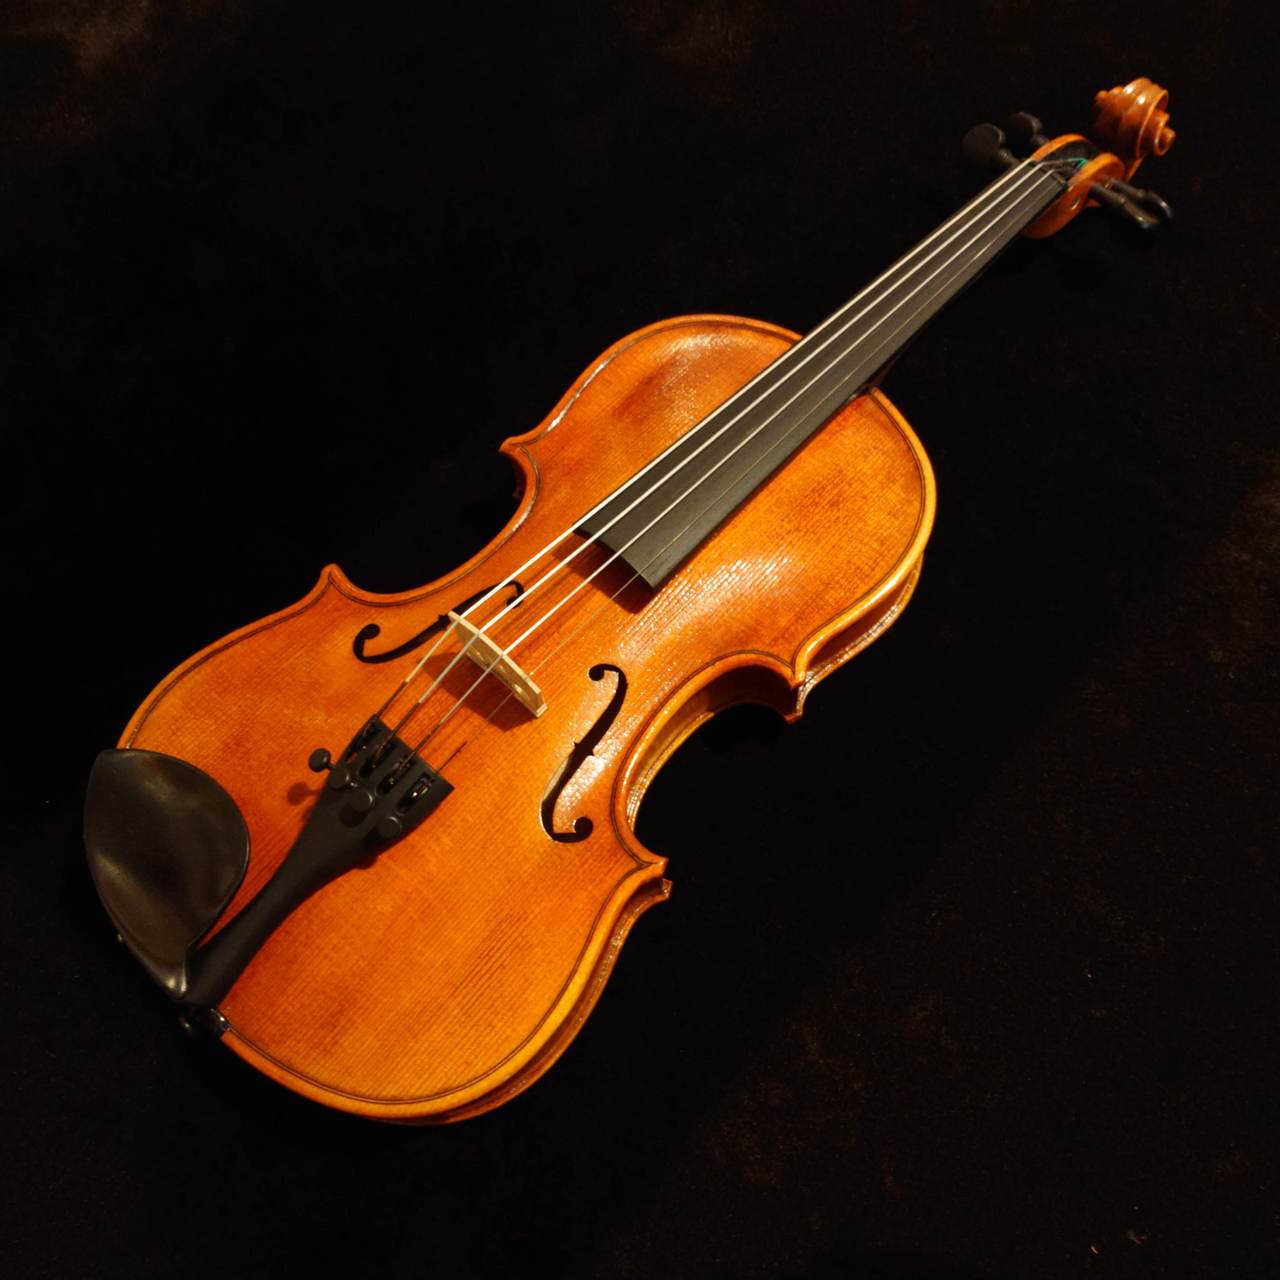 Nicolo Santi (ニコロ・サンティ)バイオリンセット NSN60S 1/8サイズ 